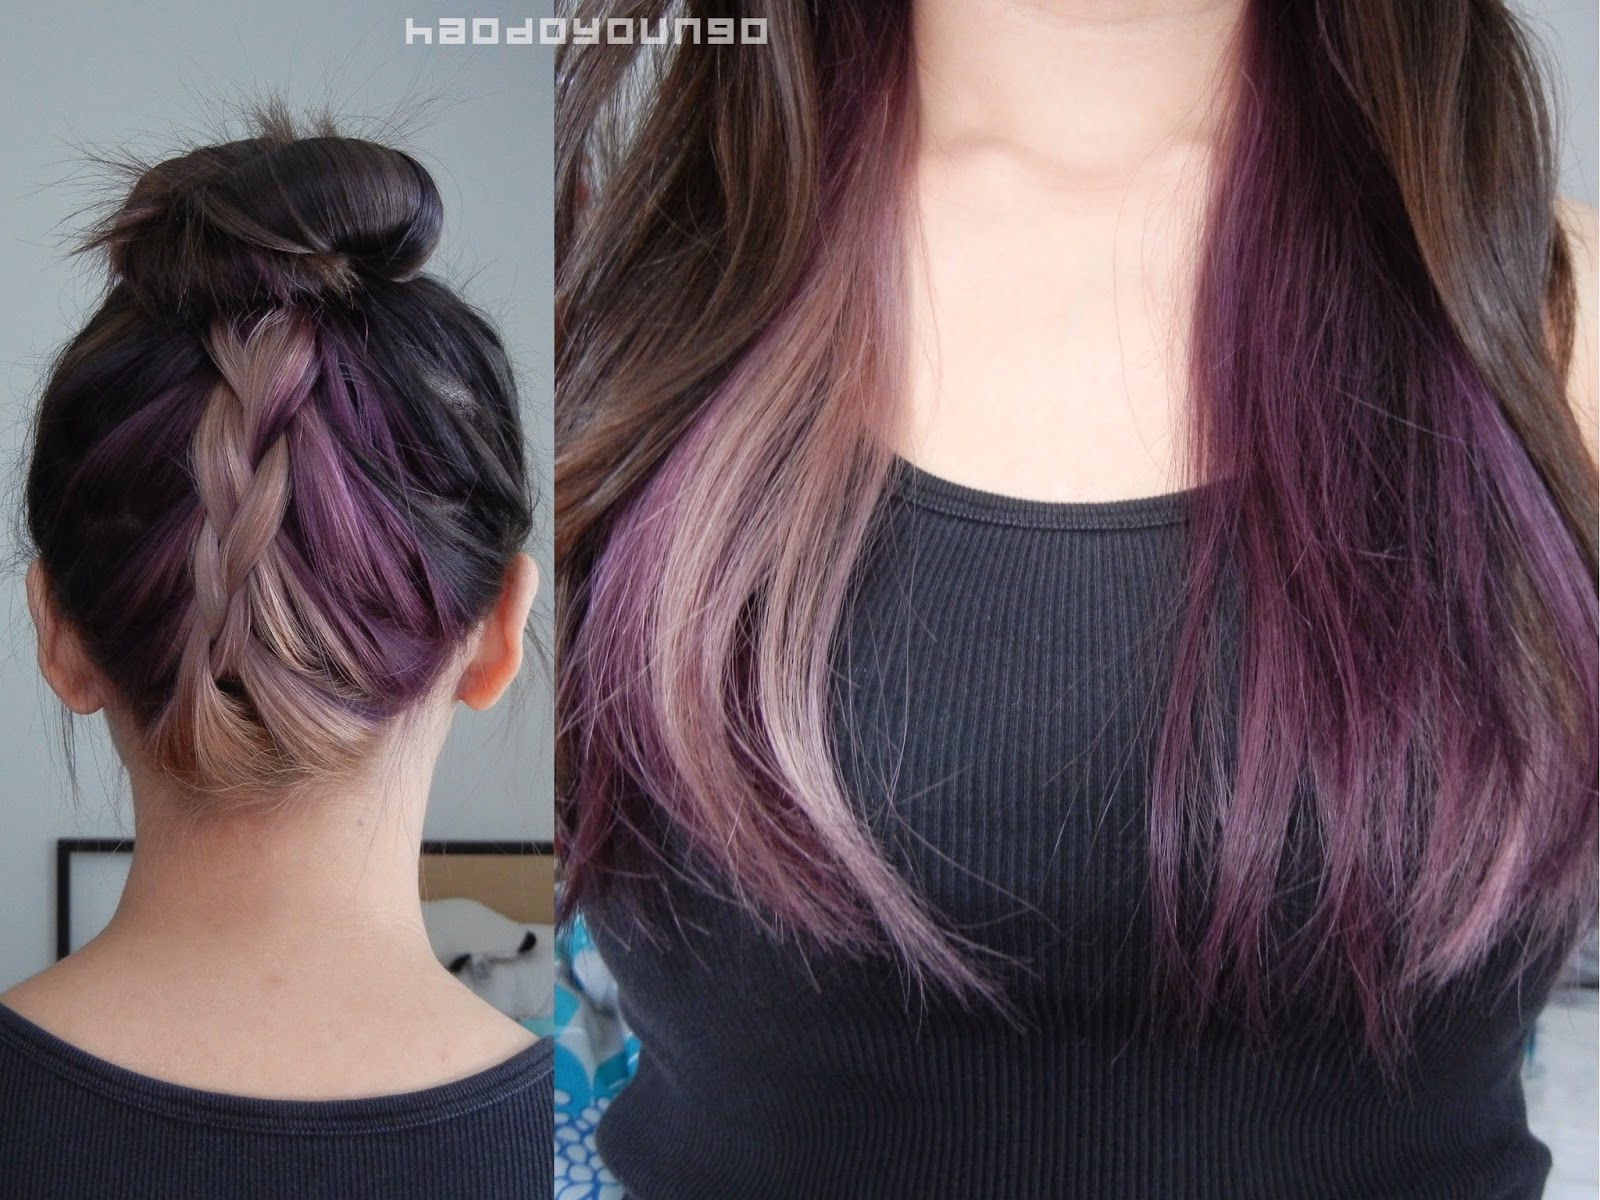 Vidal Sassoon Pro Series Hair Color 3vr Deep Velvet Violet 1 Kit